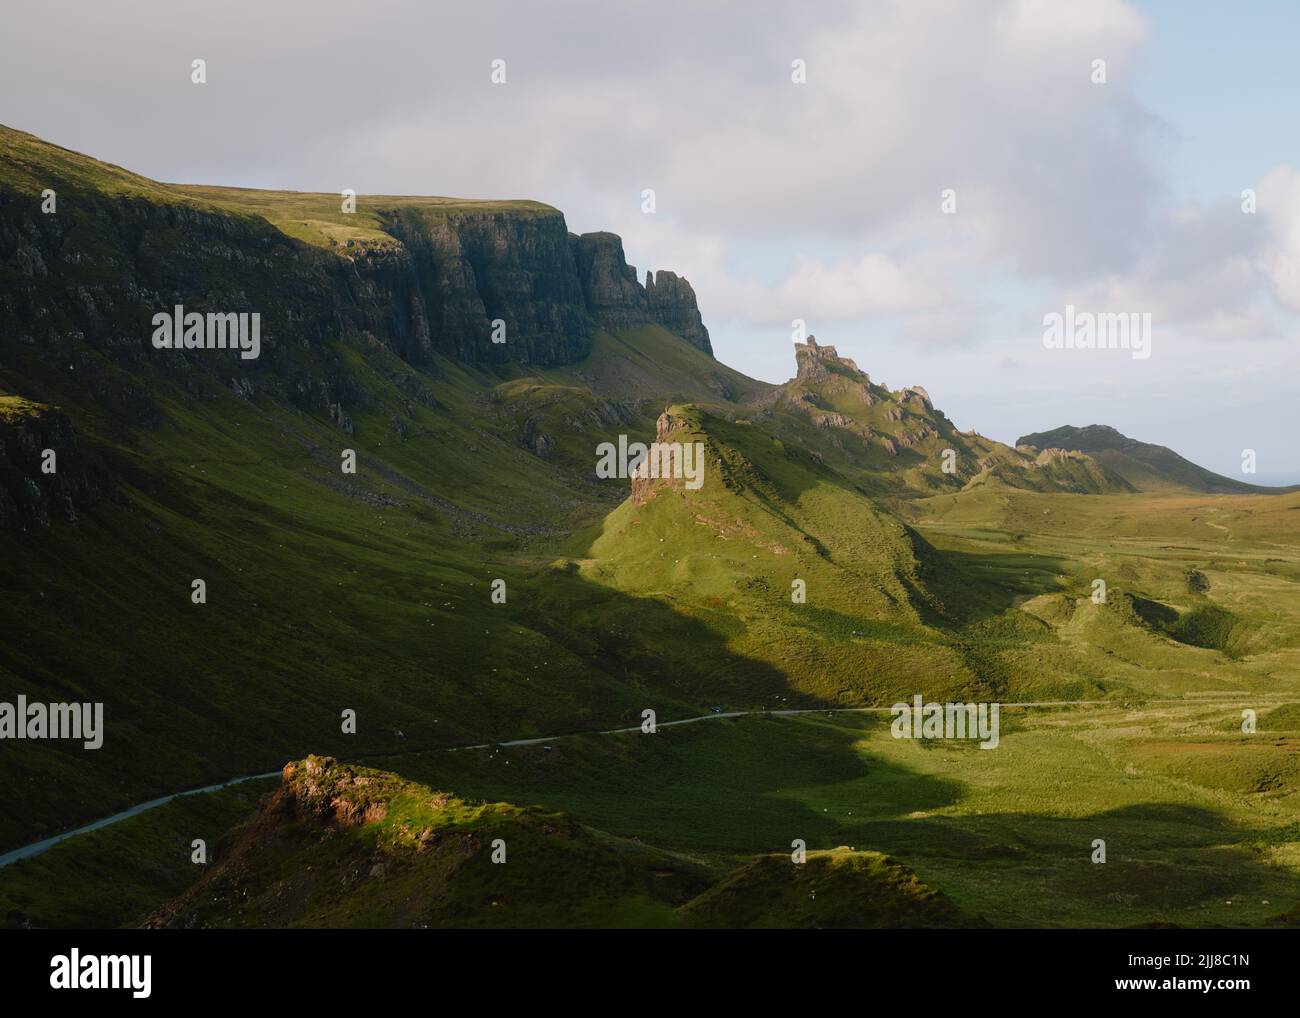 El corrimiento de tierra de Quiraing, cara oriental de Meall na Suiramach, cumbre más al norte de la cordillera Trotternish, isla de Skye, Escocia - paisaje de verano Foto de stock